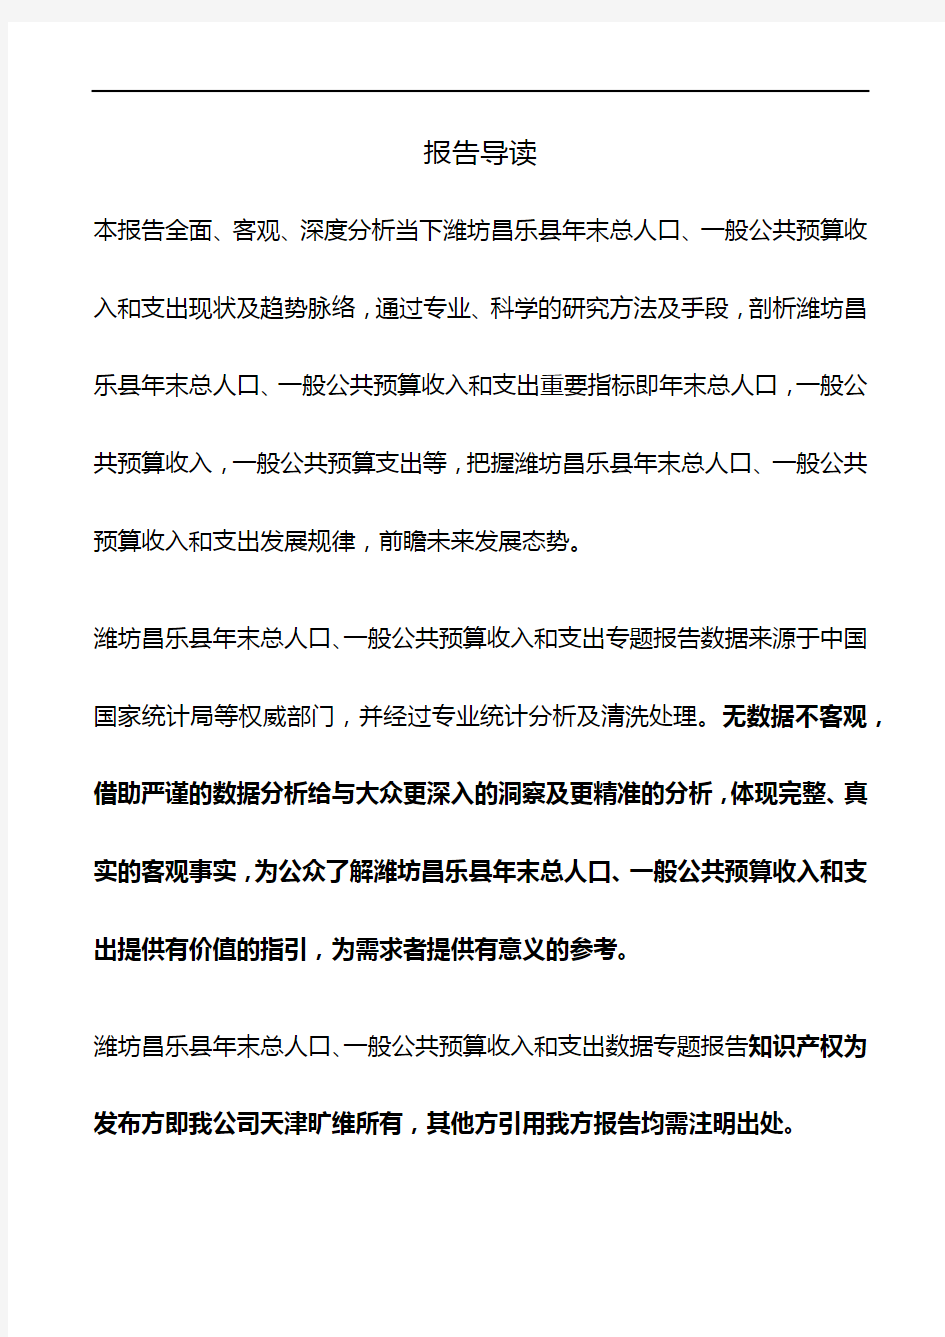 山东省潍坊昌乐县年末总人口、一般公共预算收入和支出3年数据专题报告2019版